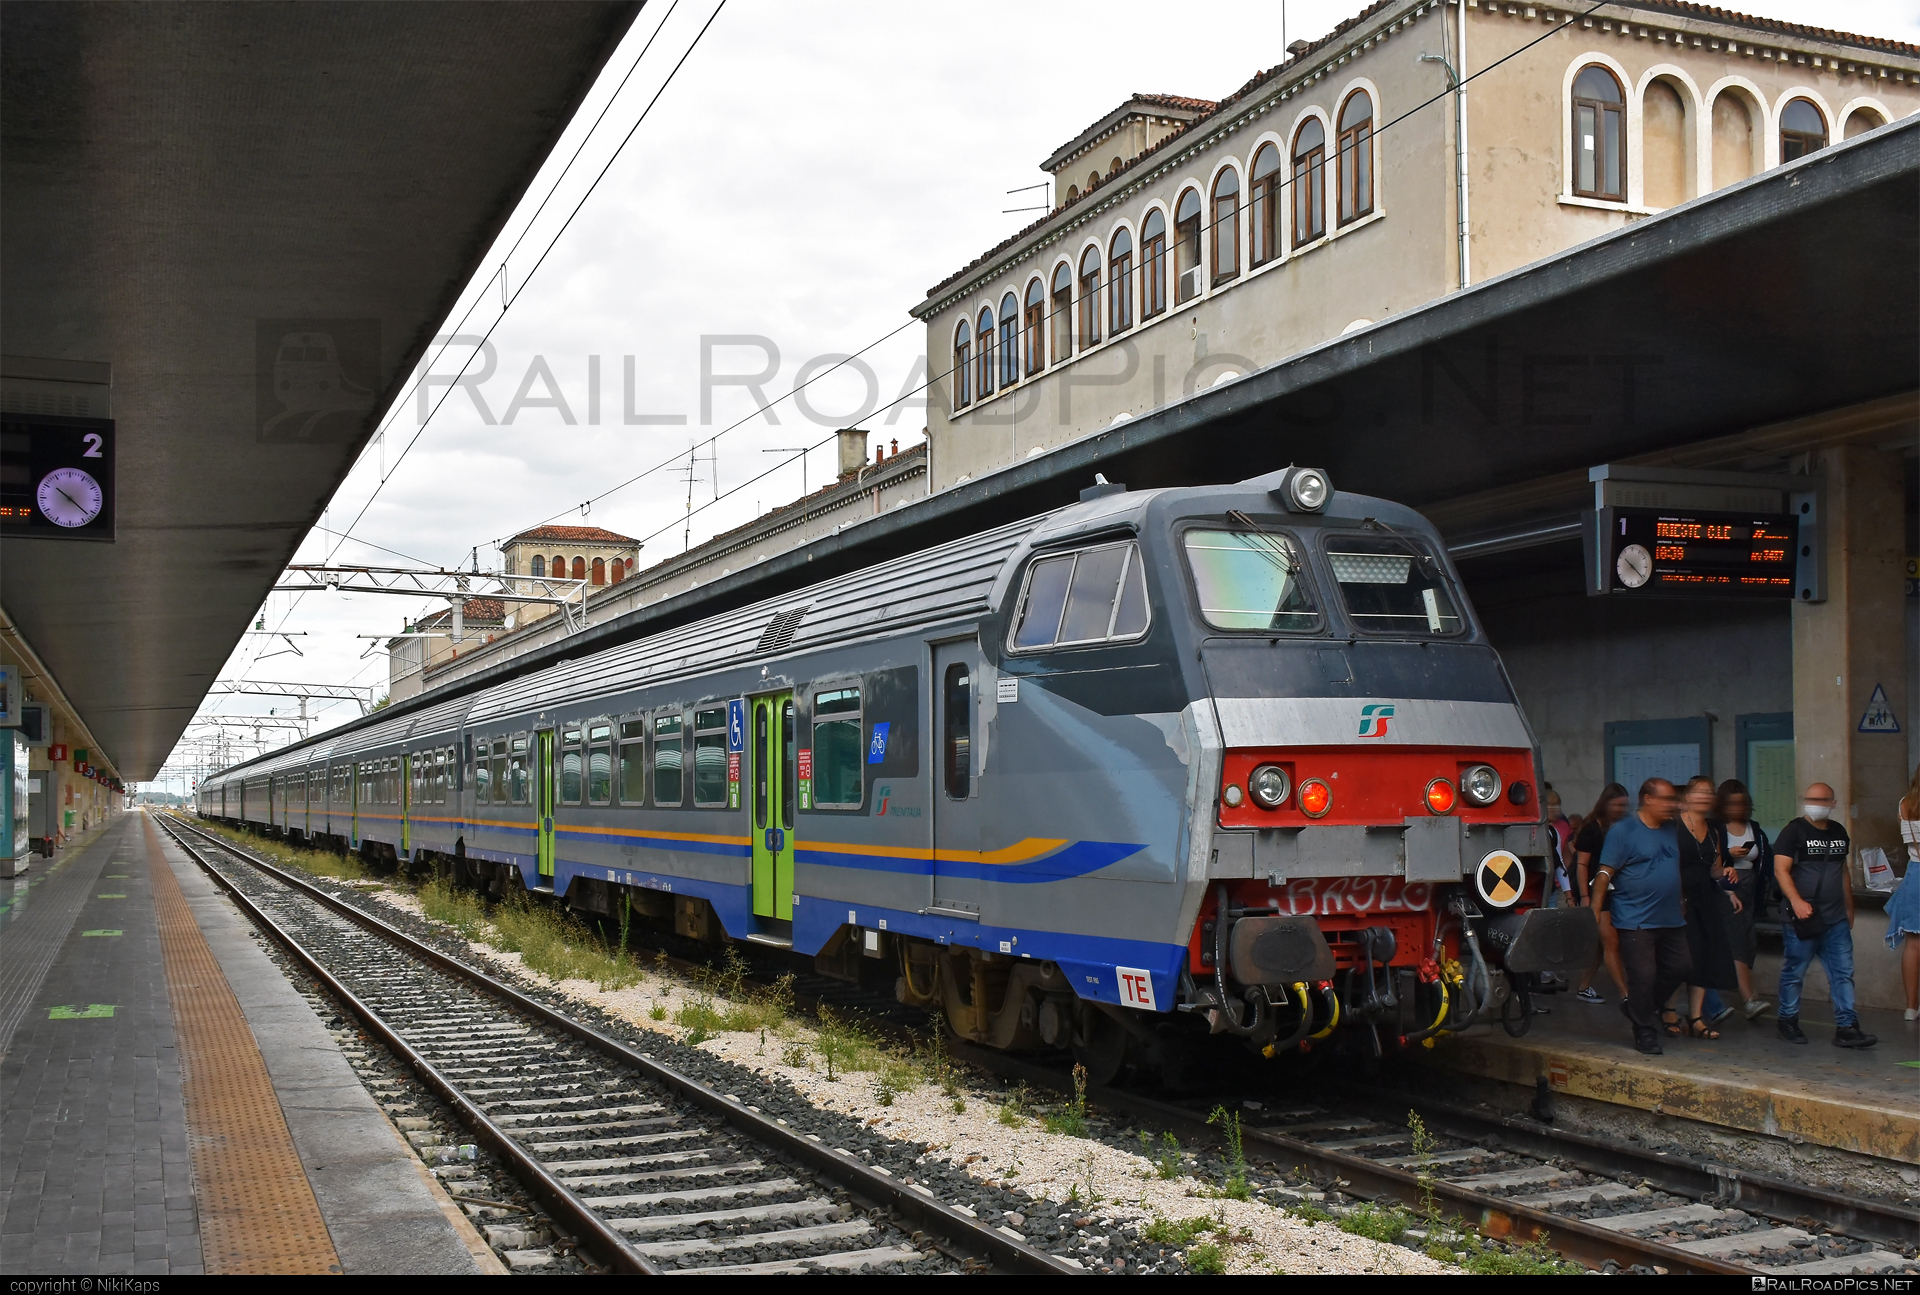 Class B - MDVC semi-pilot - 87-87 000-1 operated by Trenitalia S.p.A. #ferroviedellostato #fs #fsitaliane #trenitalia #trenitaliaspa